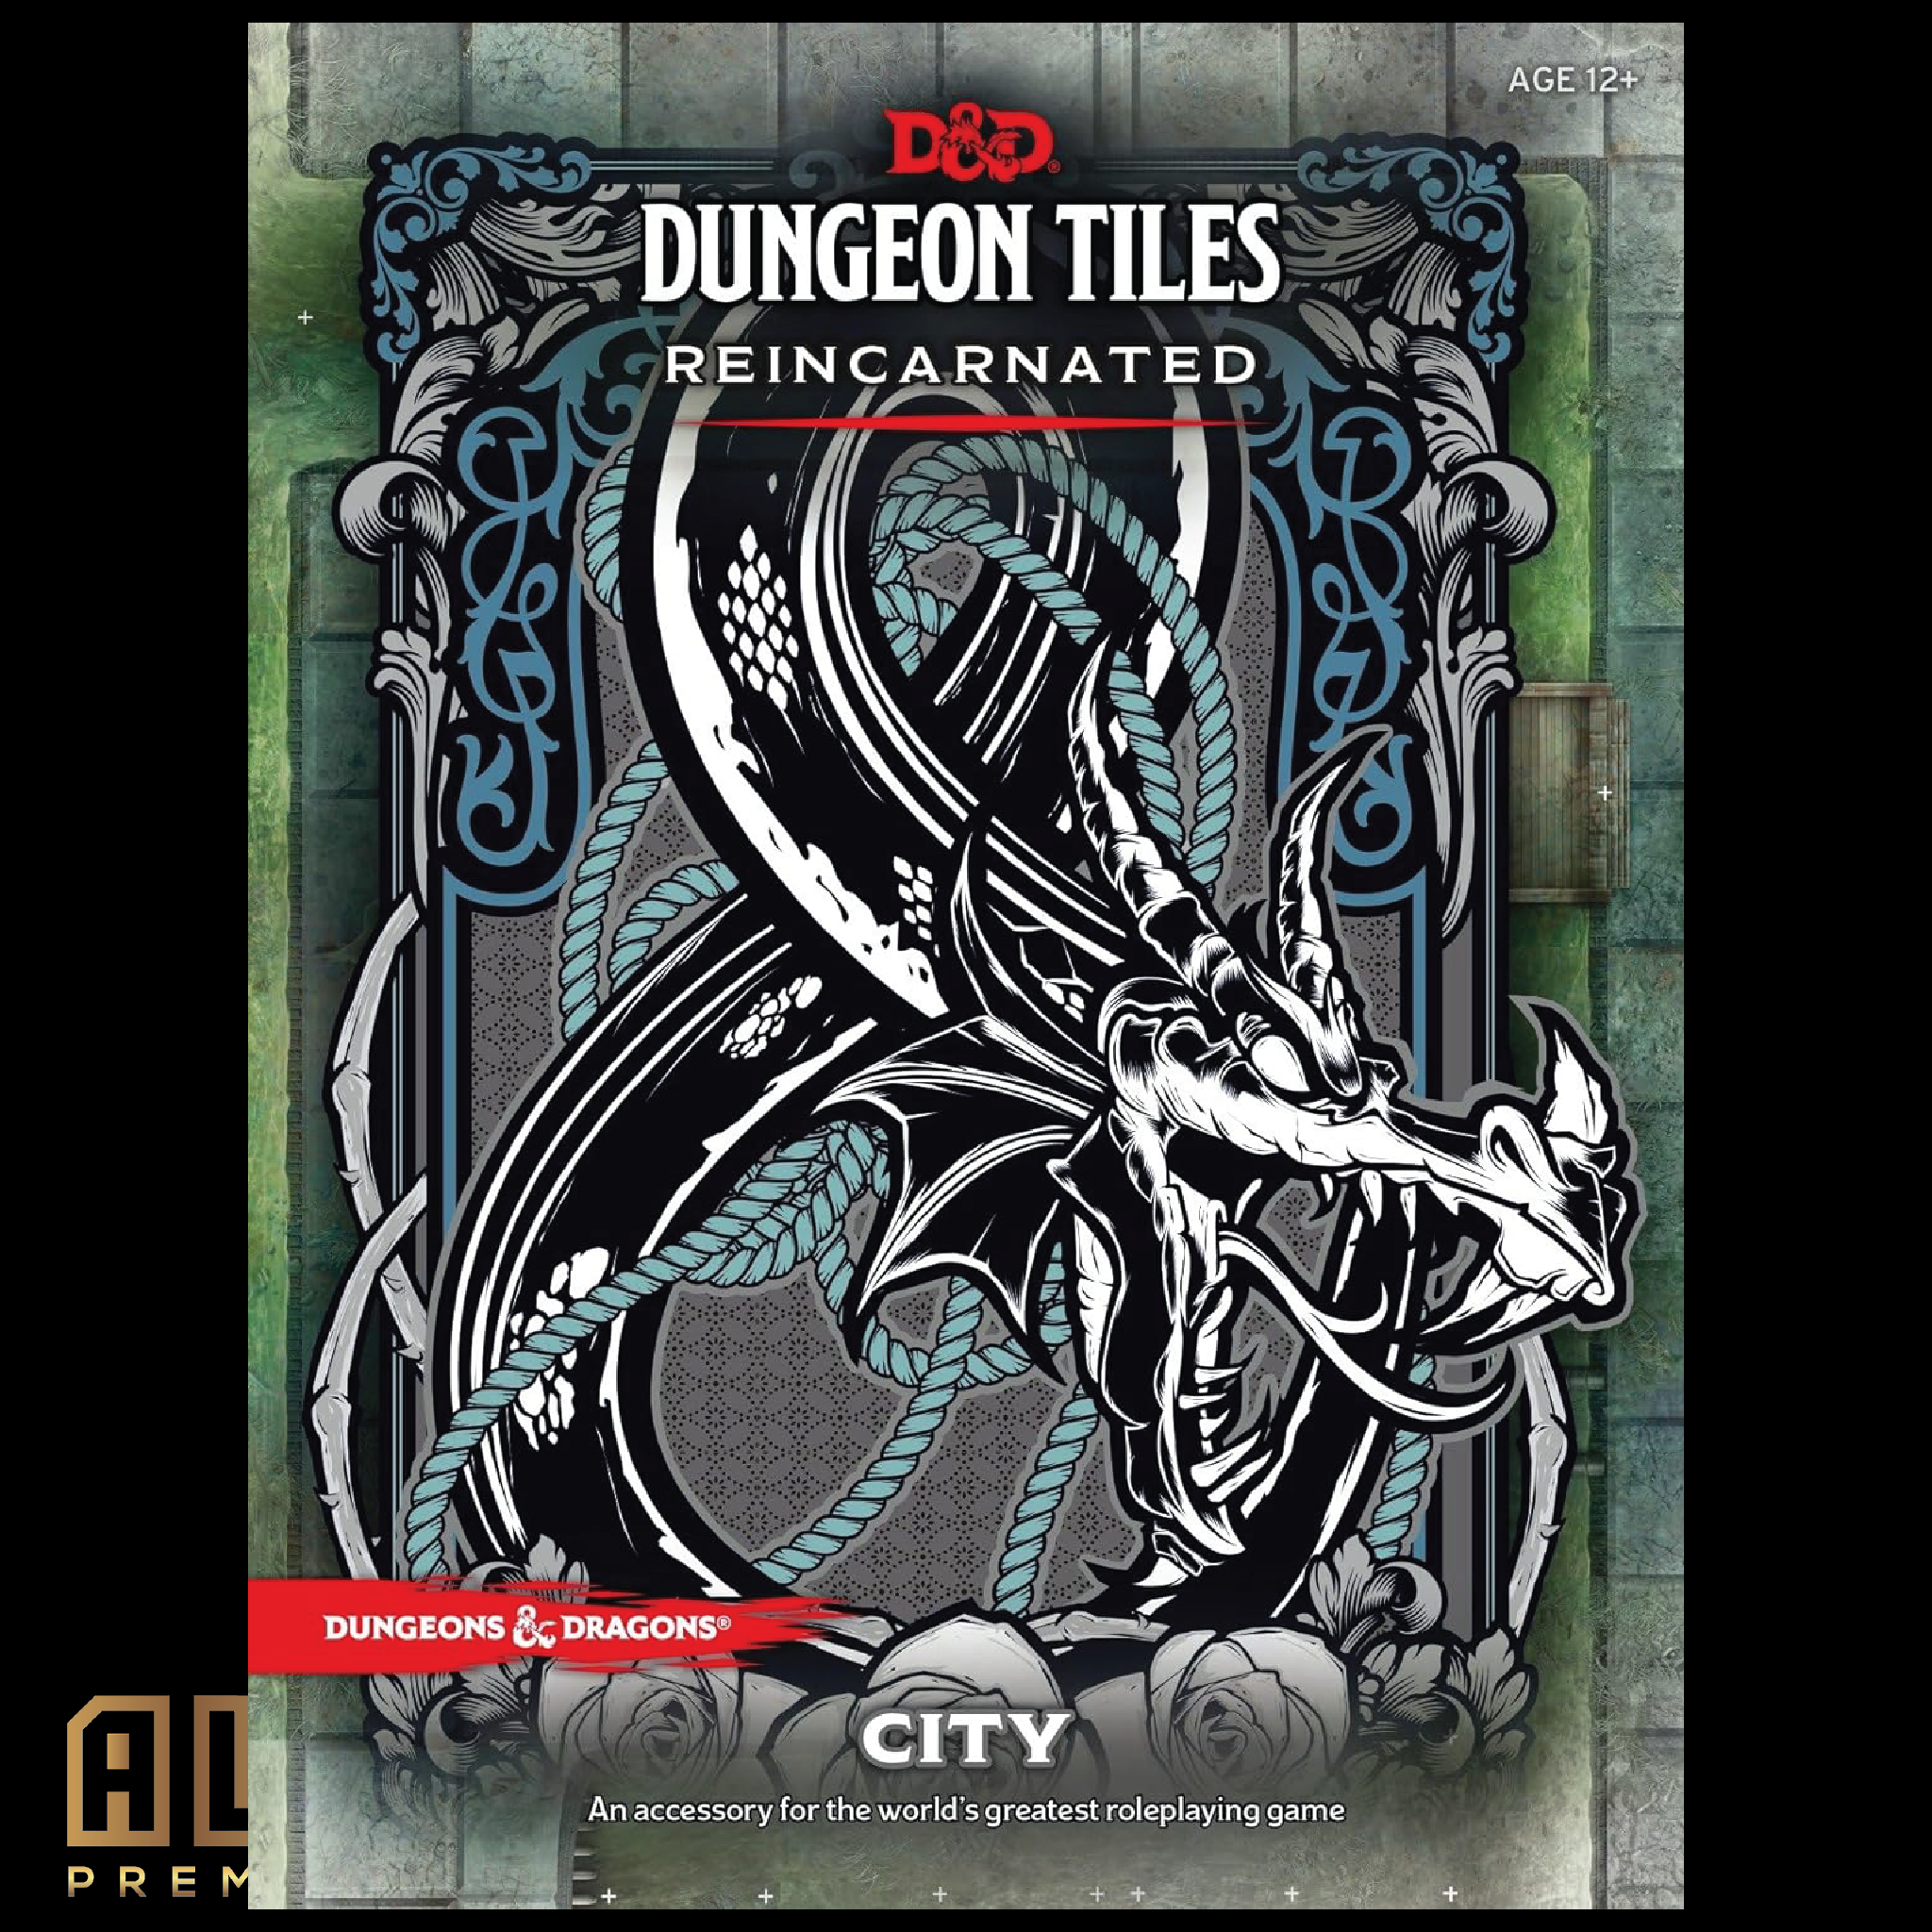 D&D Dungeon Tiles: Reincarnated - City